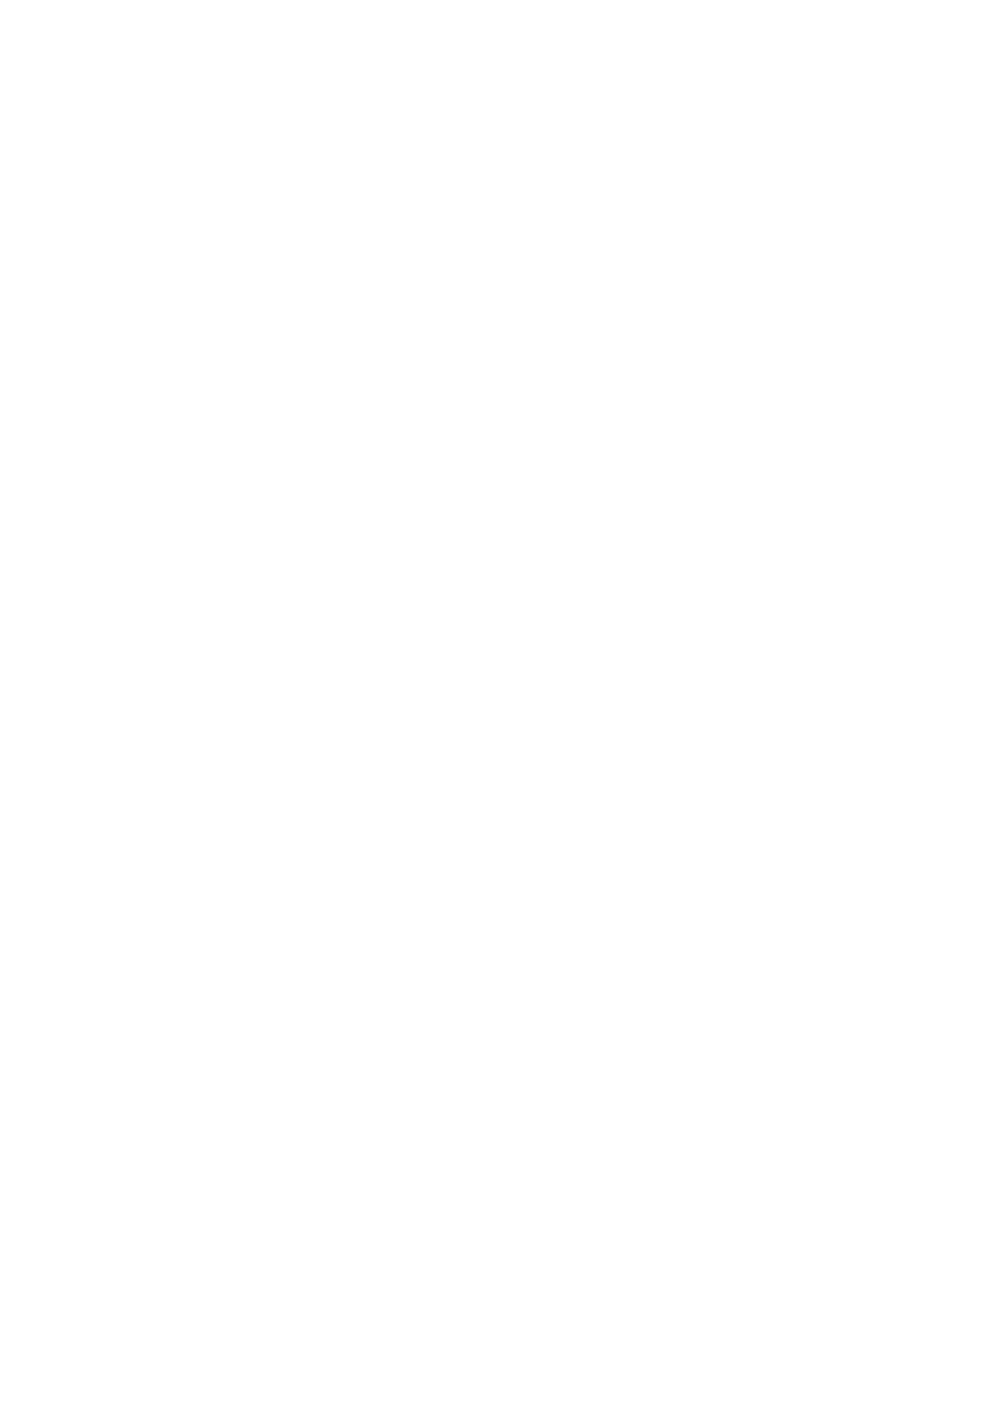 Визуальный конспект в виде скрайбинга спикеров на мероприятии "Росмолодежи"